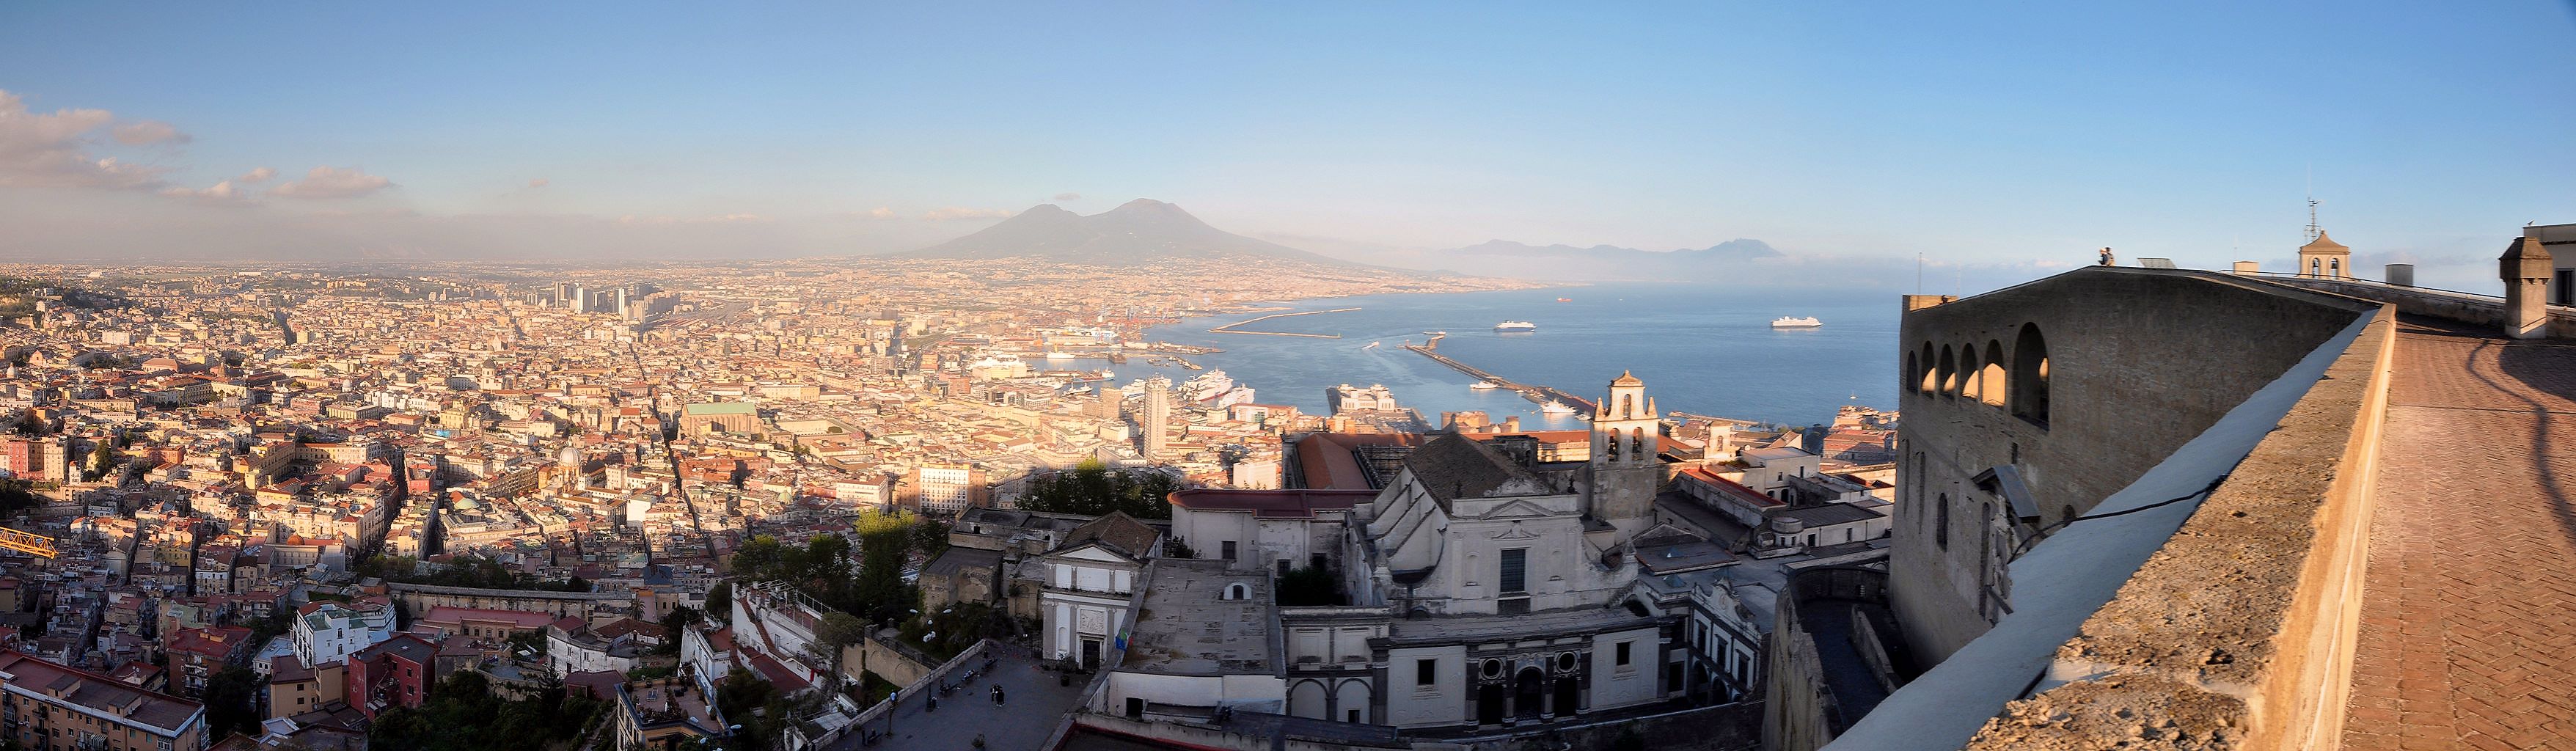  |Blick vom Castel Sant’Elmo nach Süden über die Stadt Neapel mit dem Hafen zum Vesuv